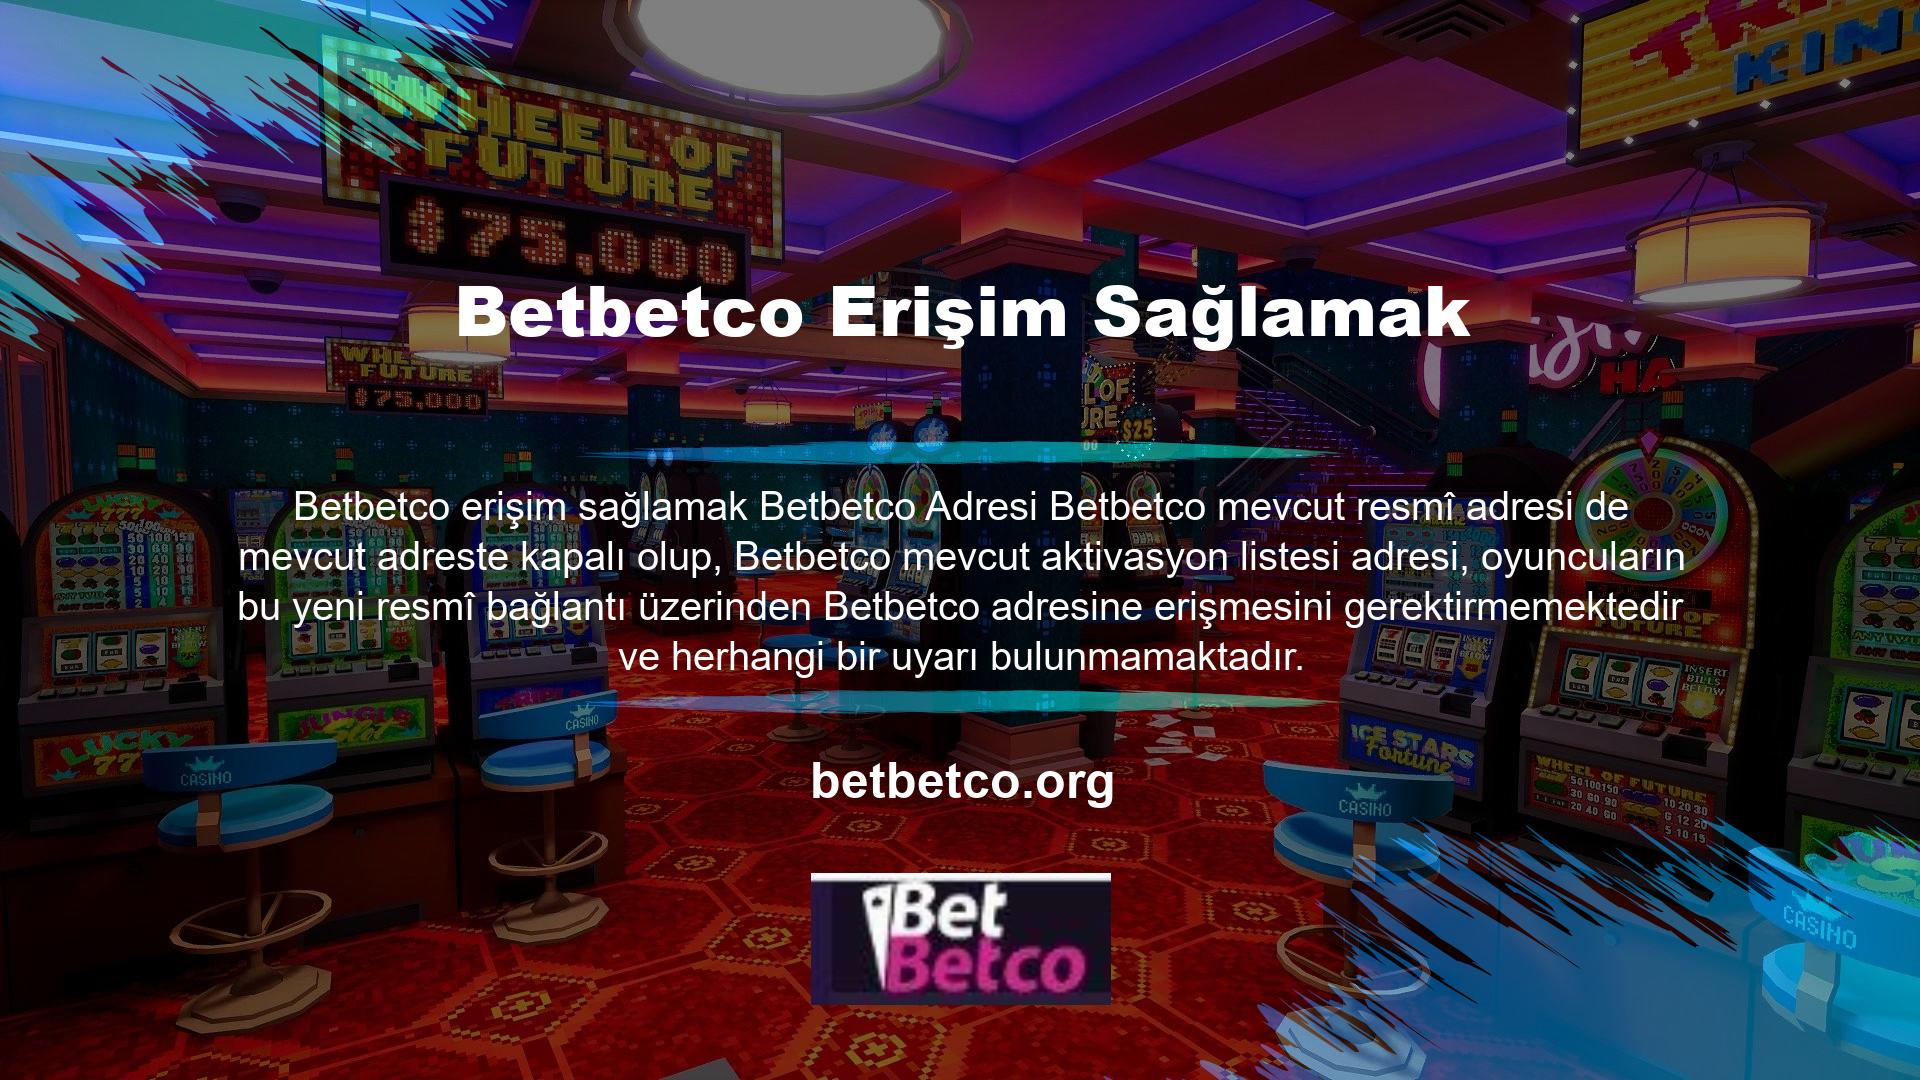 Ödemeler Spor bahisleri ve casino oyunları aracılığıyla yatırımlarını sürekli olarak ikiye katlayan oyuncular aynı ödeme hızlarını bekler ve üyeler için Betbetco, üyelerinin ihtiyaç duyduğu ödemeleri almanın en hızlı yoludur